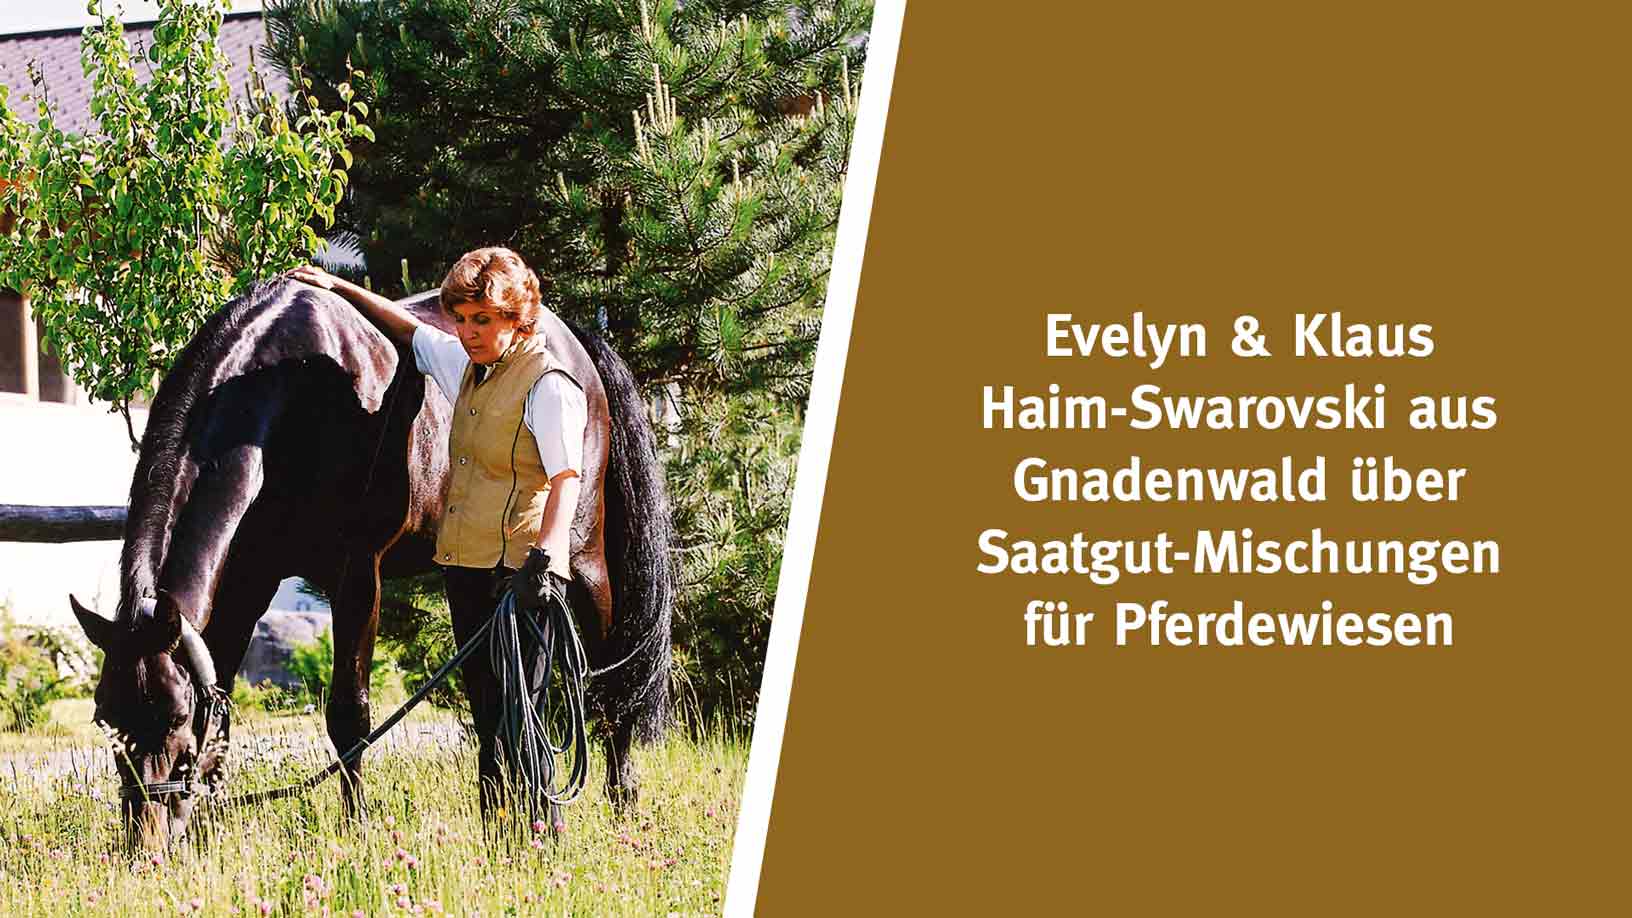 Evelyn & Klaus Haim-Swarovski aus Gnadenwald über Saatgut-Mischungen für Pferdewiesen